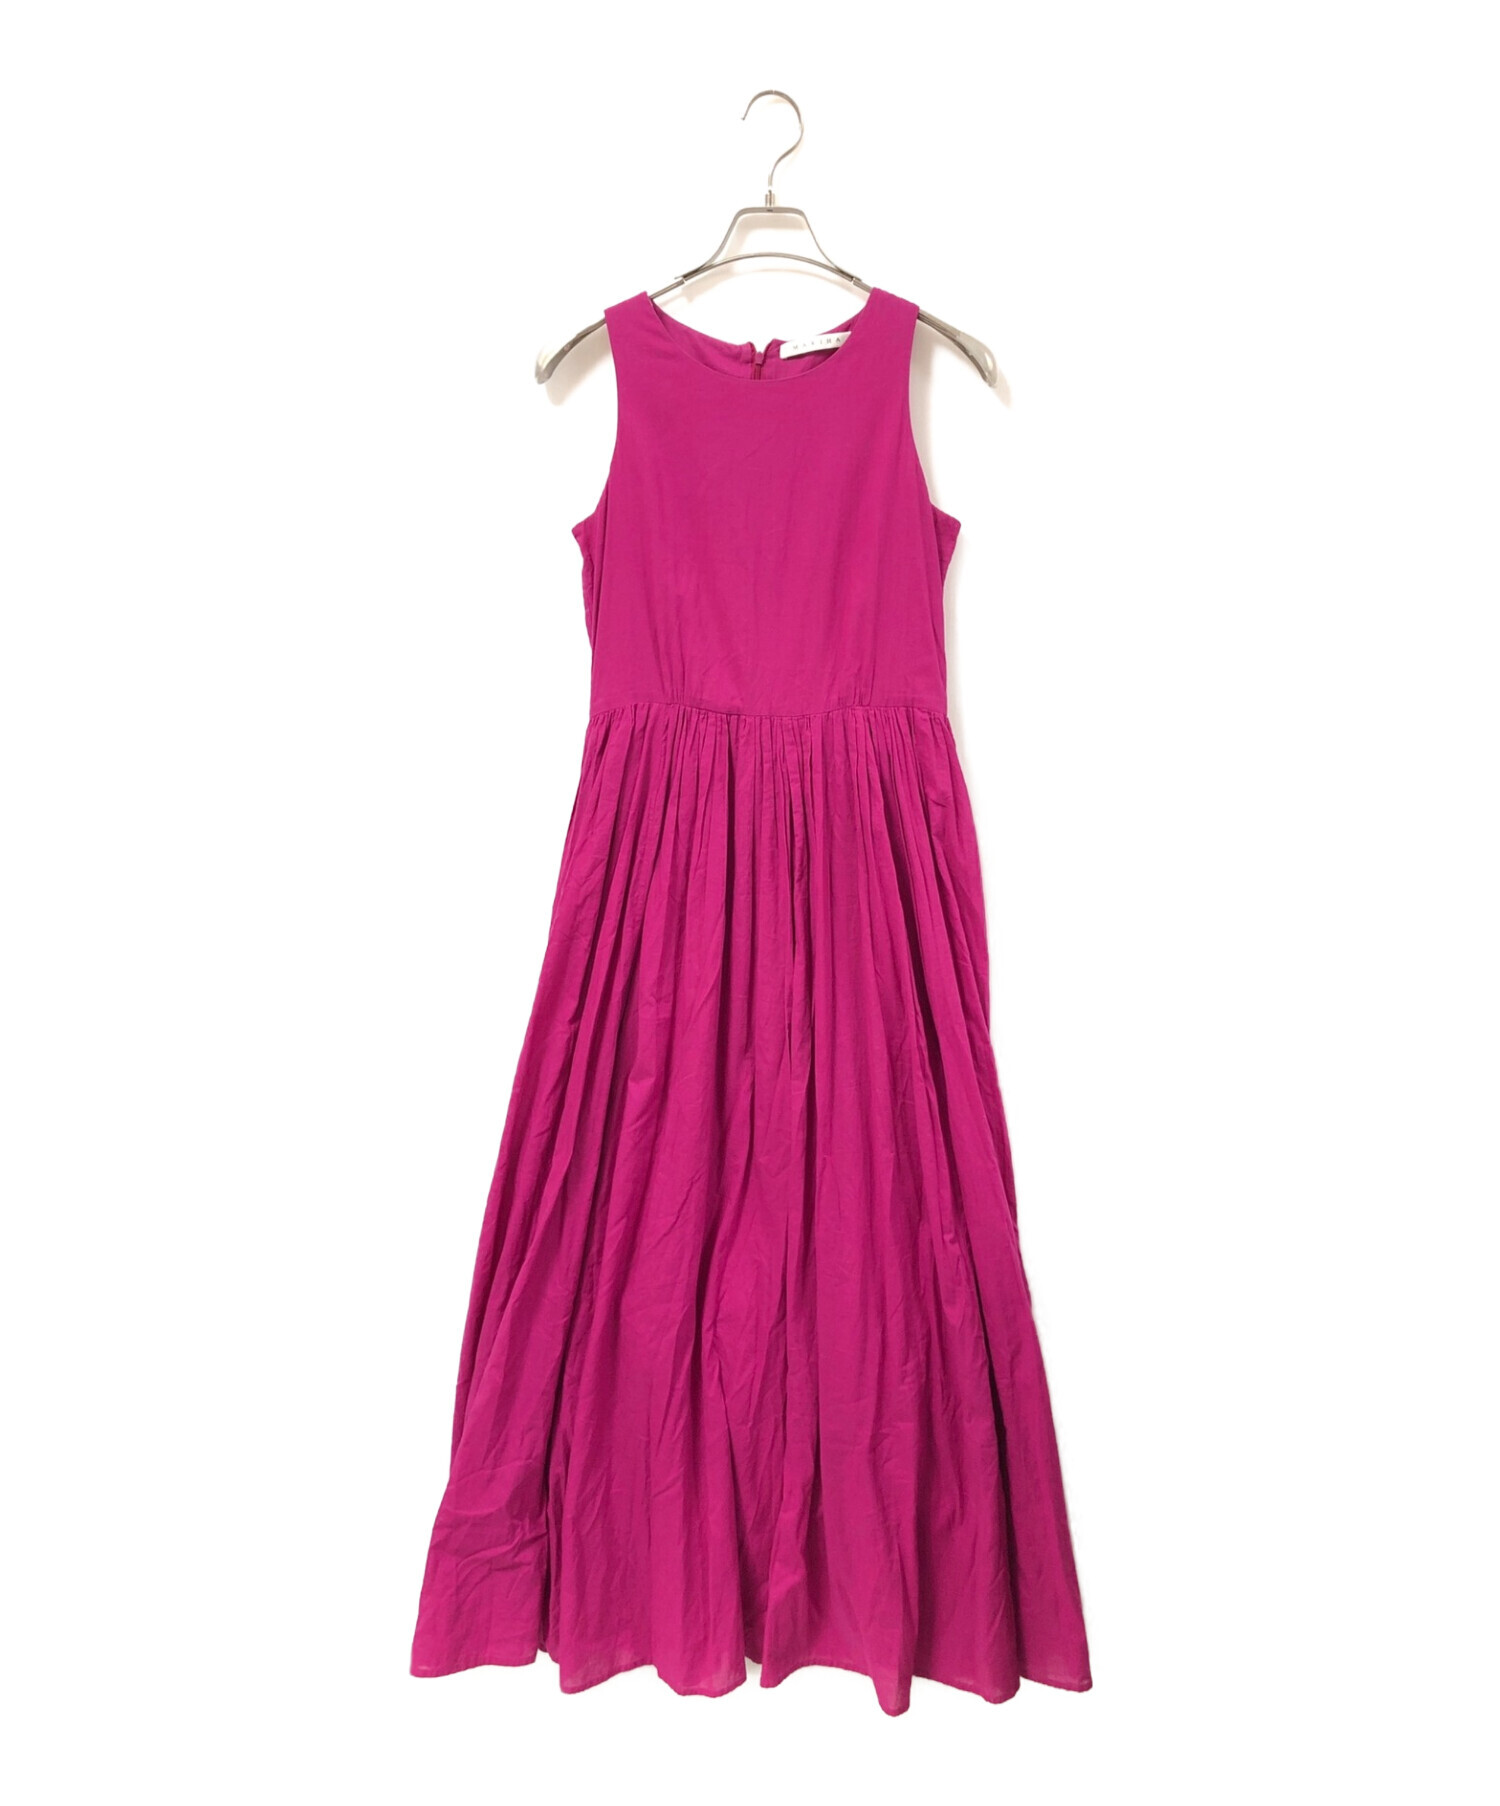 MARIHA (マリハ) 夏のレディのドレス/ノースリーブワンピース ショッキングピンク サイズ:38